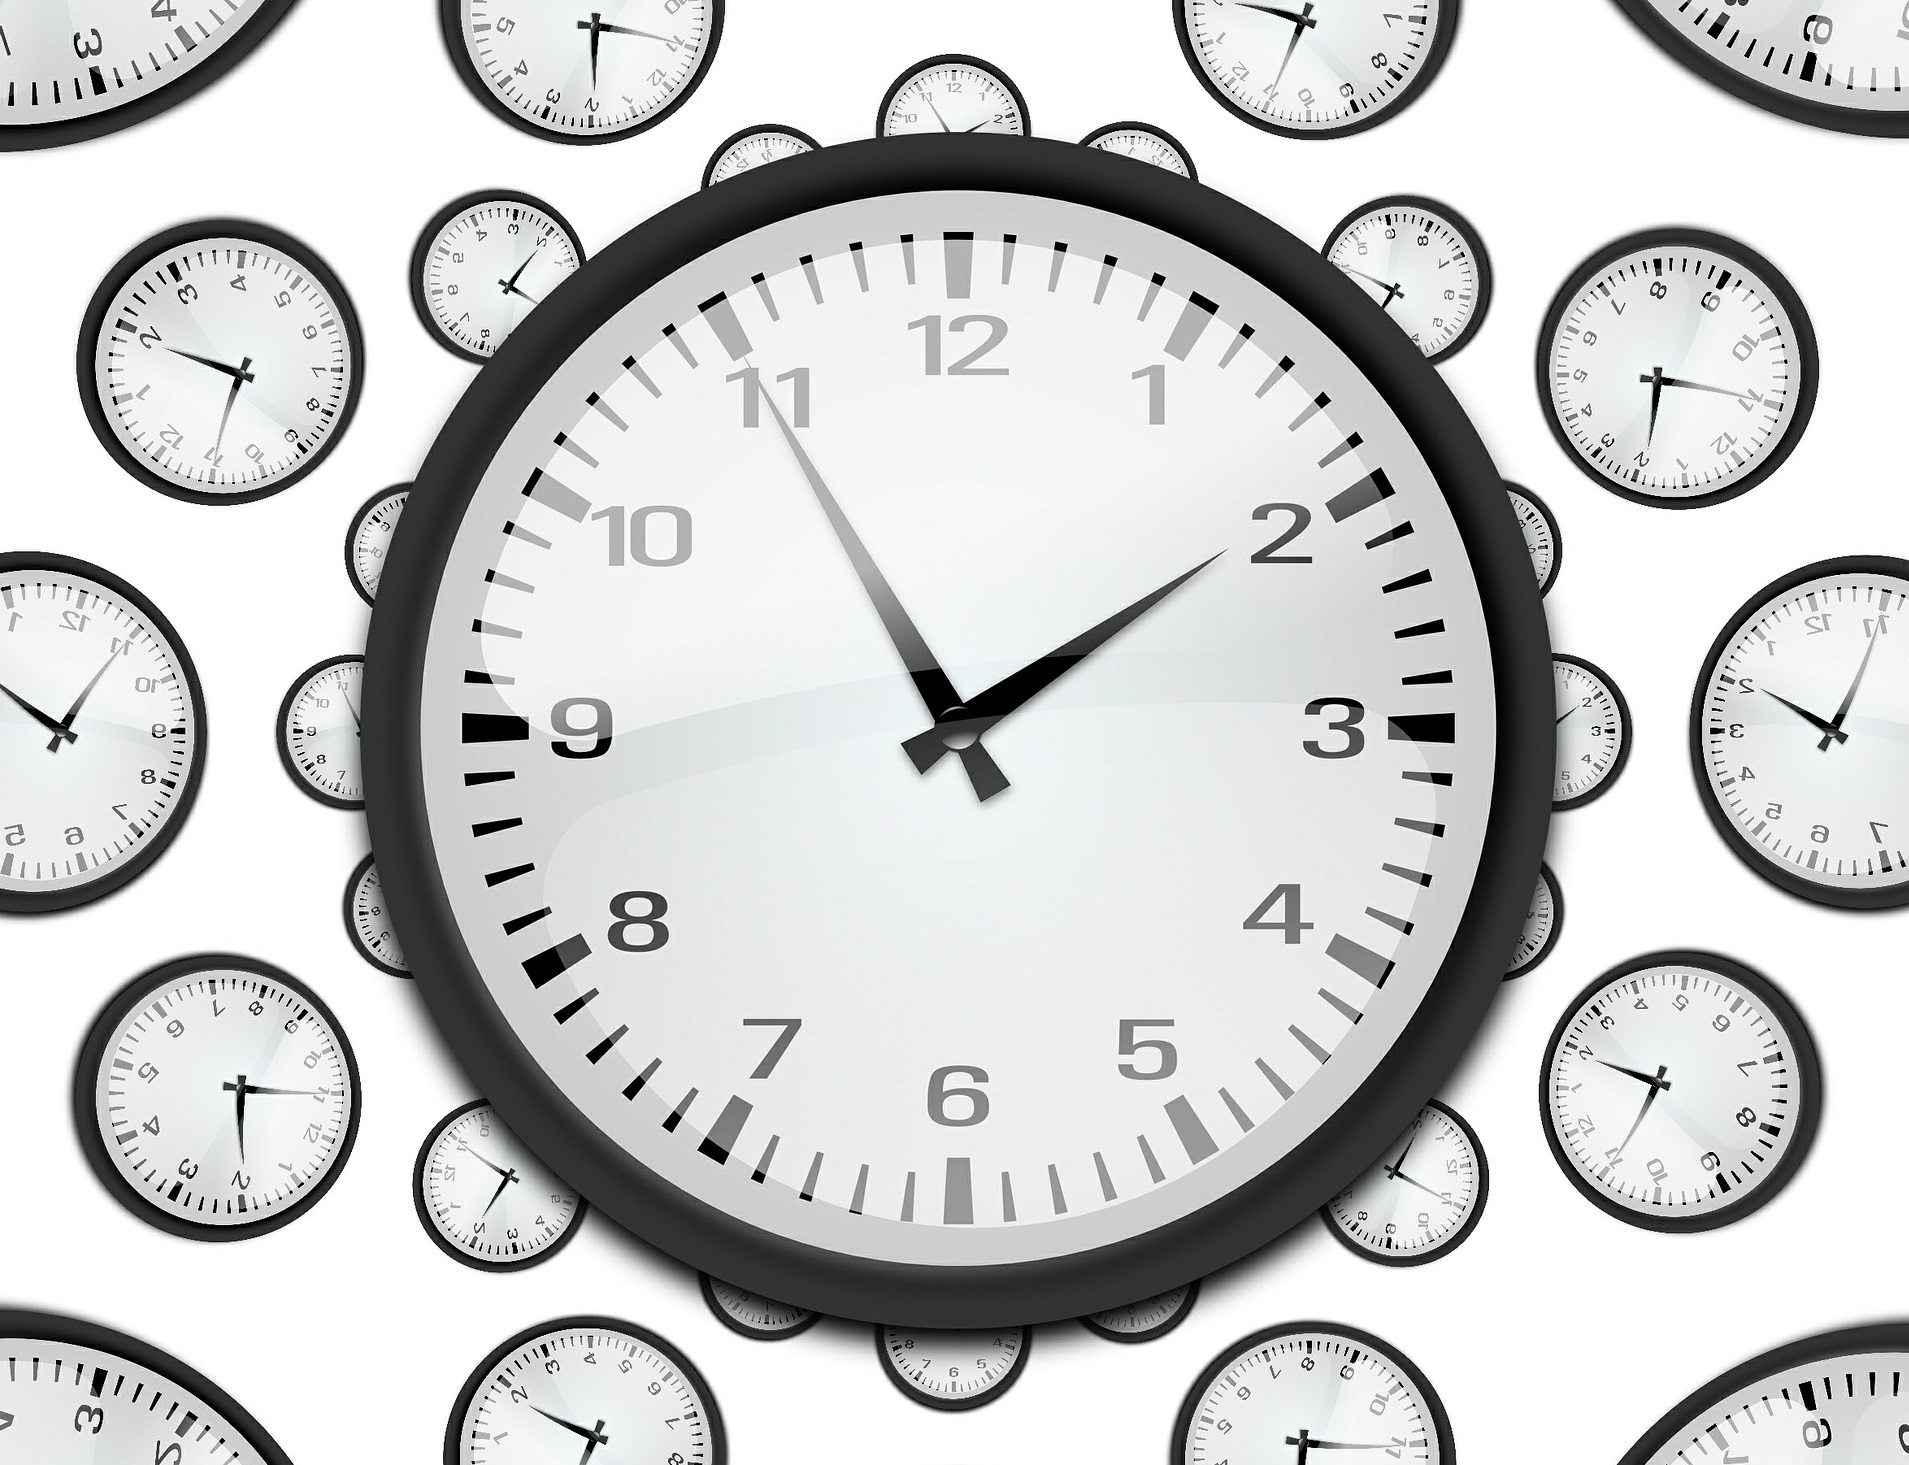 Часы 15 ru. Изображение часов. Часы на белом фоне. Часы 8 утра. Часы 8 часов.